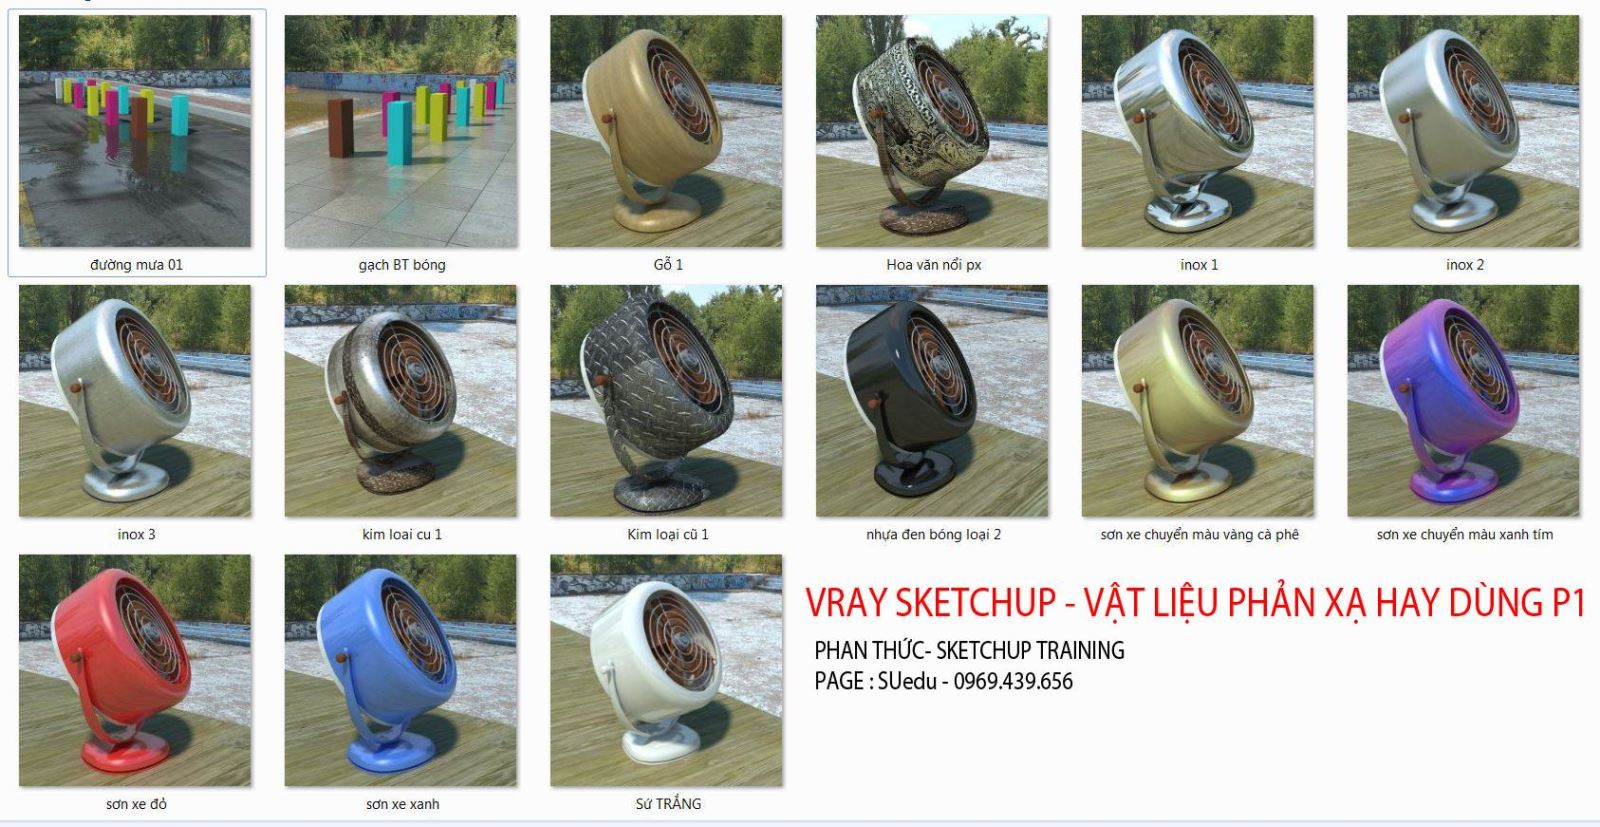 Thumbnail (Phần 1) Thư viện vật liệu Vray for Sketchup - Shared by Phan Thức